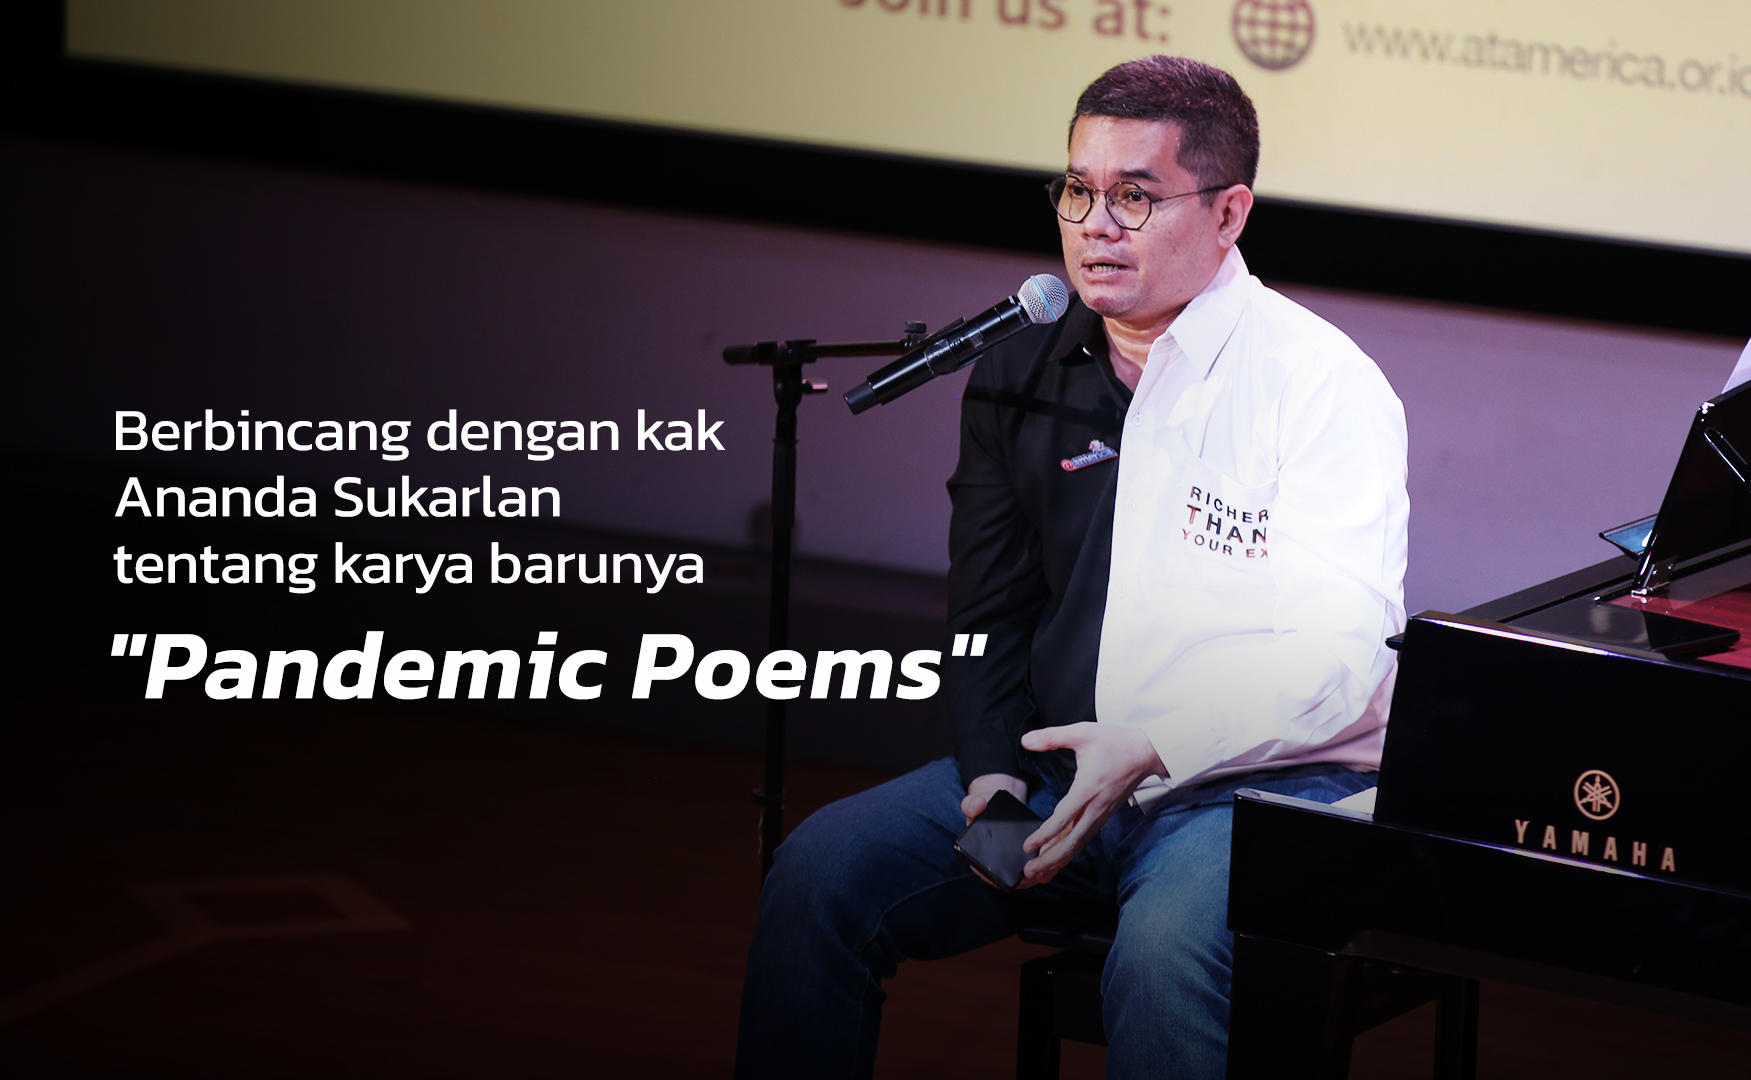 Berbincang dengan kak Ananda Sukarlan tentang karya barunya “Pandemic Poems”